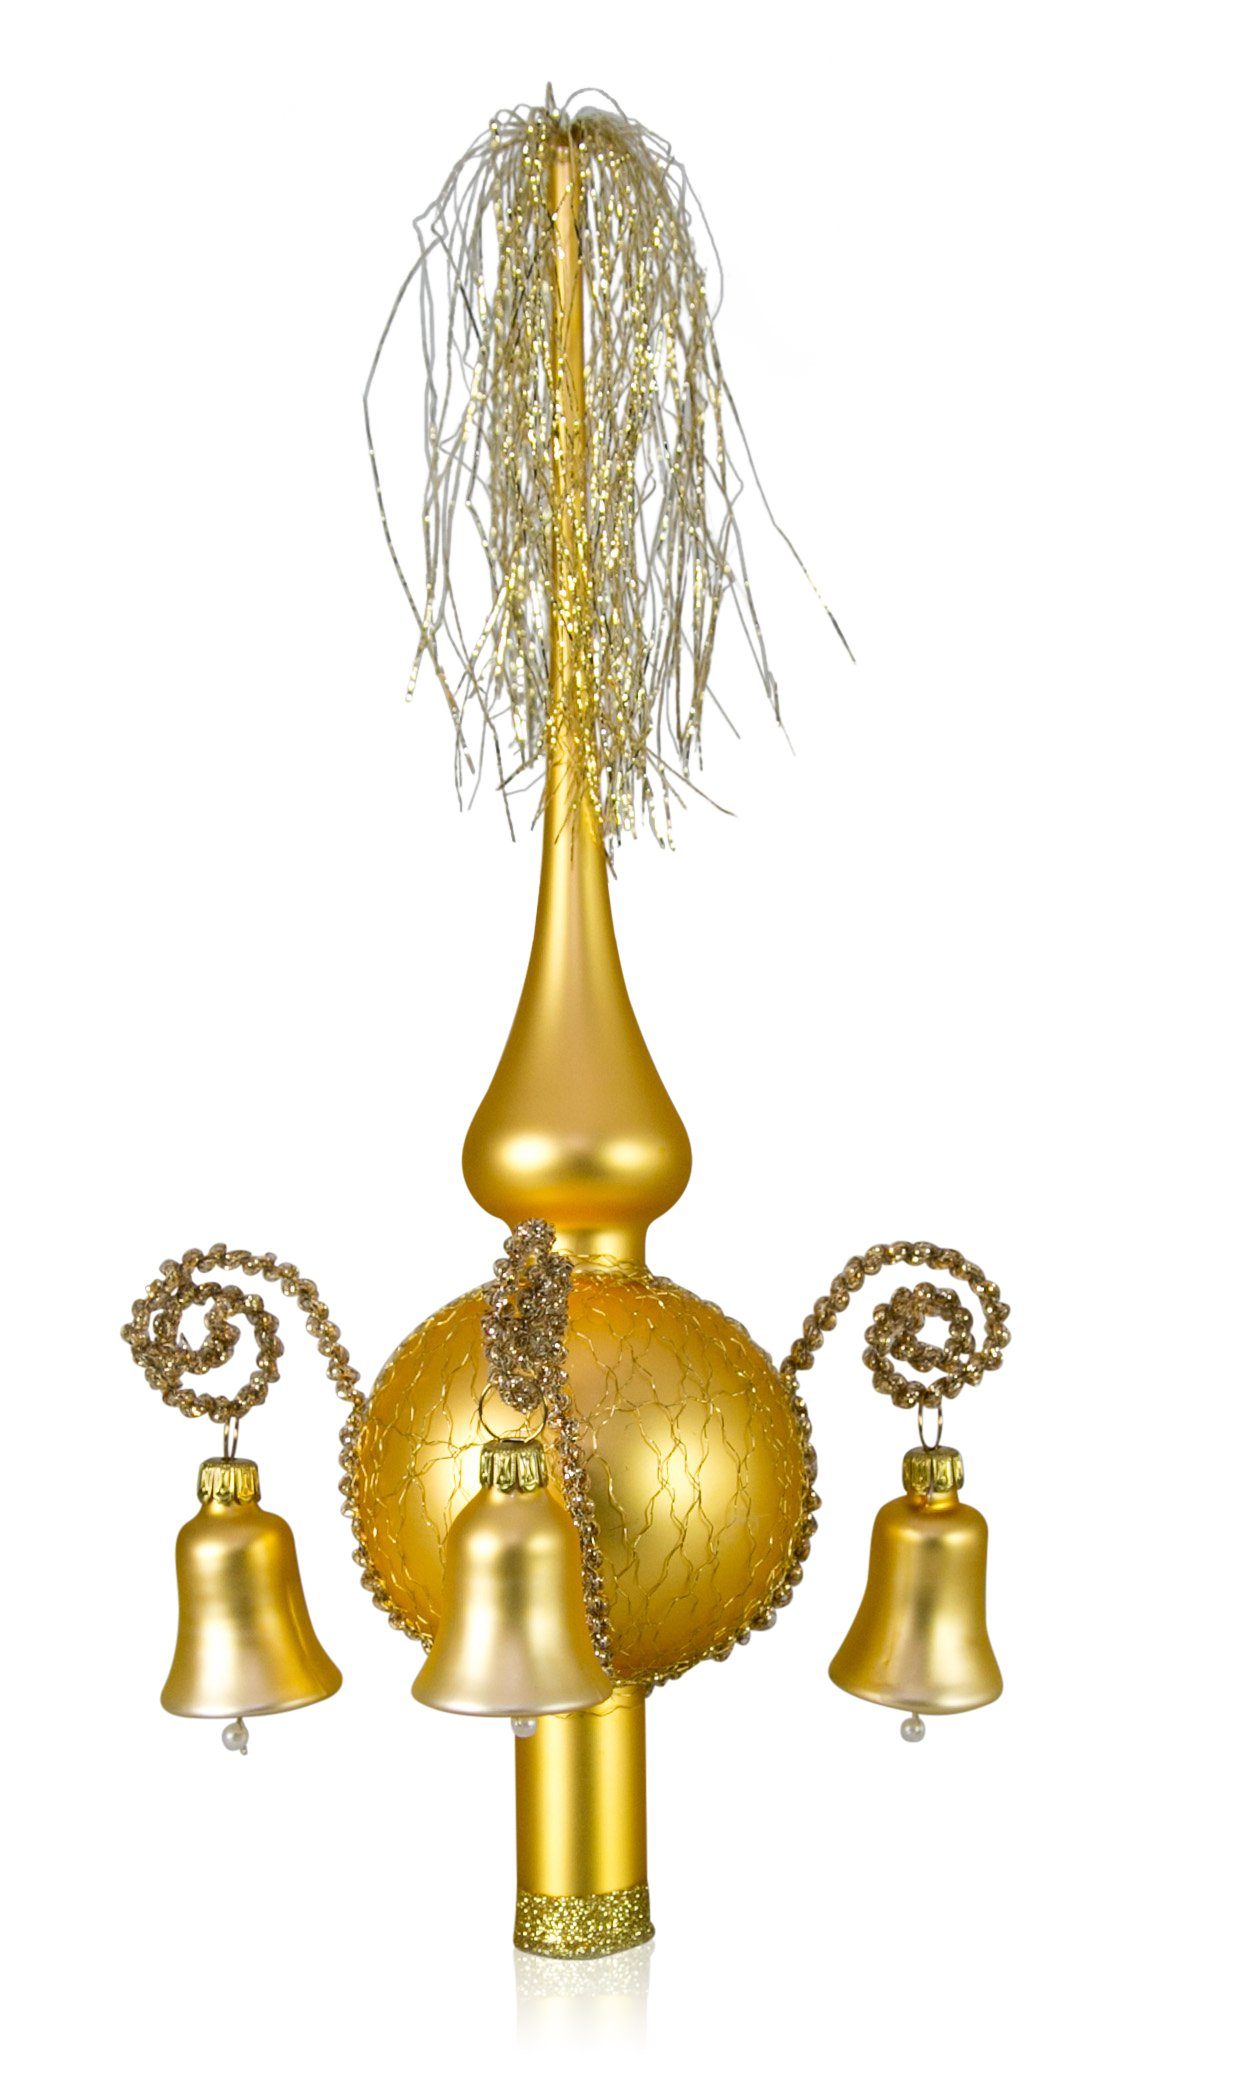 Lauschaer Glas Christbaumspitze Weihnachtsbaumspitze mit klingenden Glöckchen, mit Leonischem Draht, mundgeblasen, handdekoriert, handbemalt, in Lauscha hergestellt gold matt